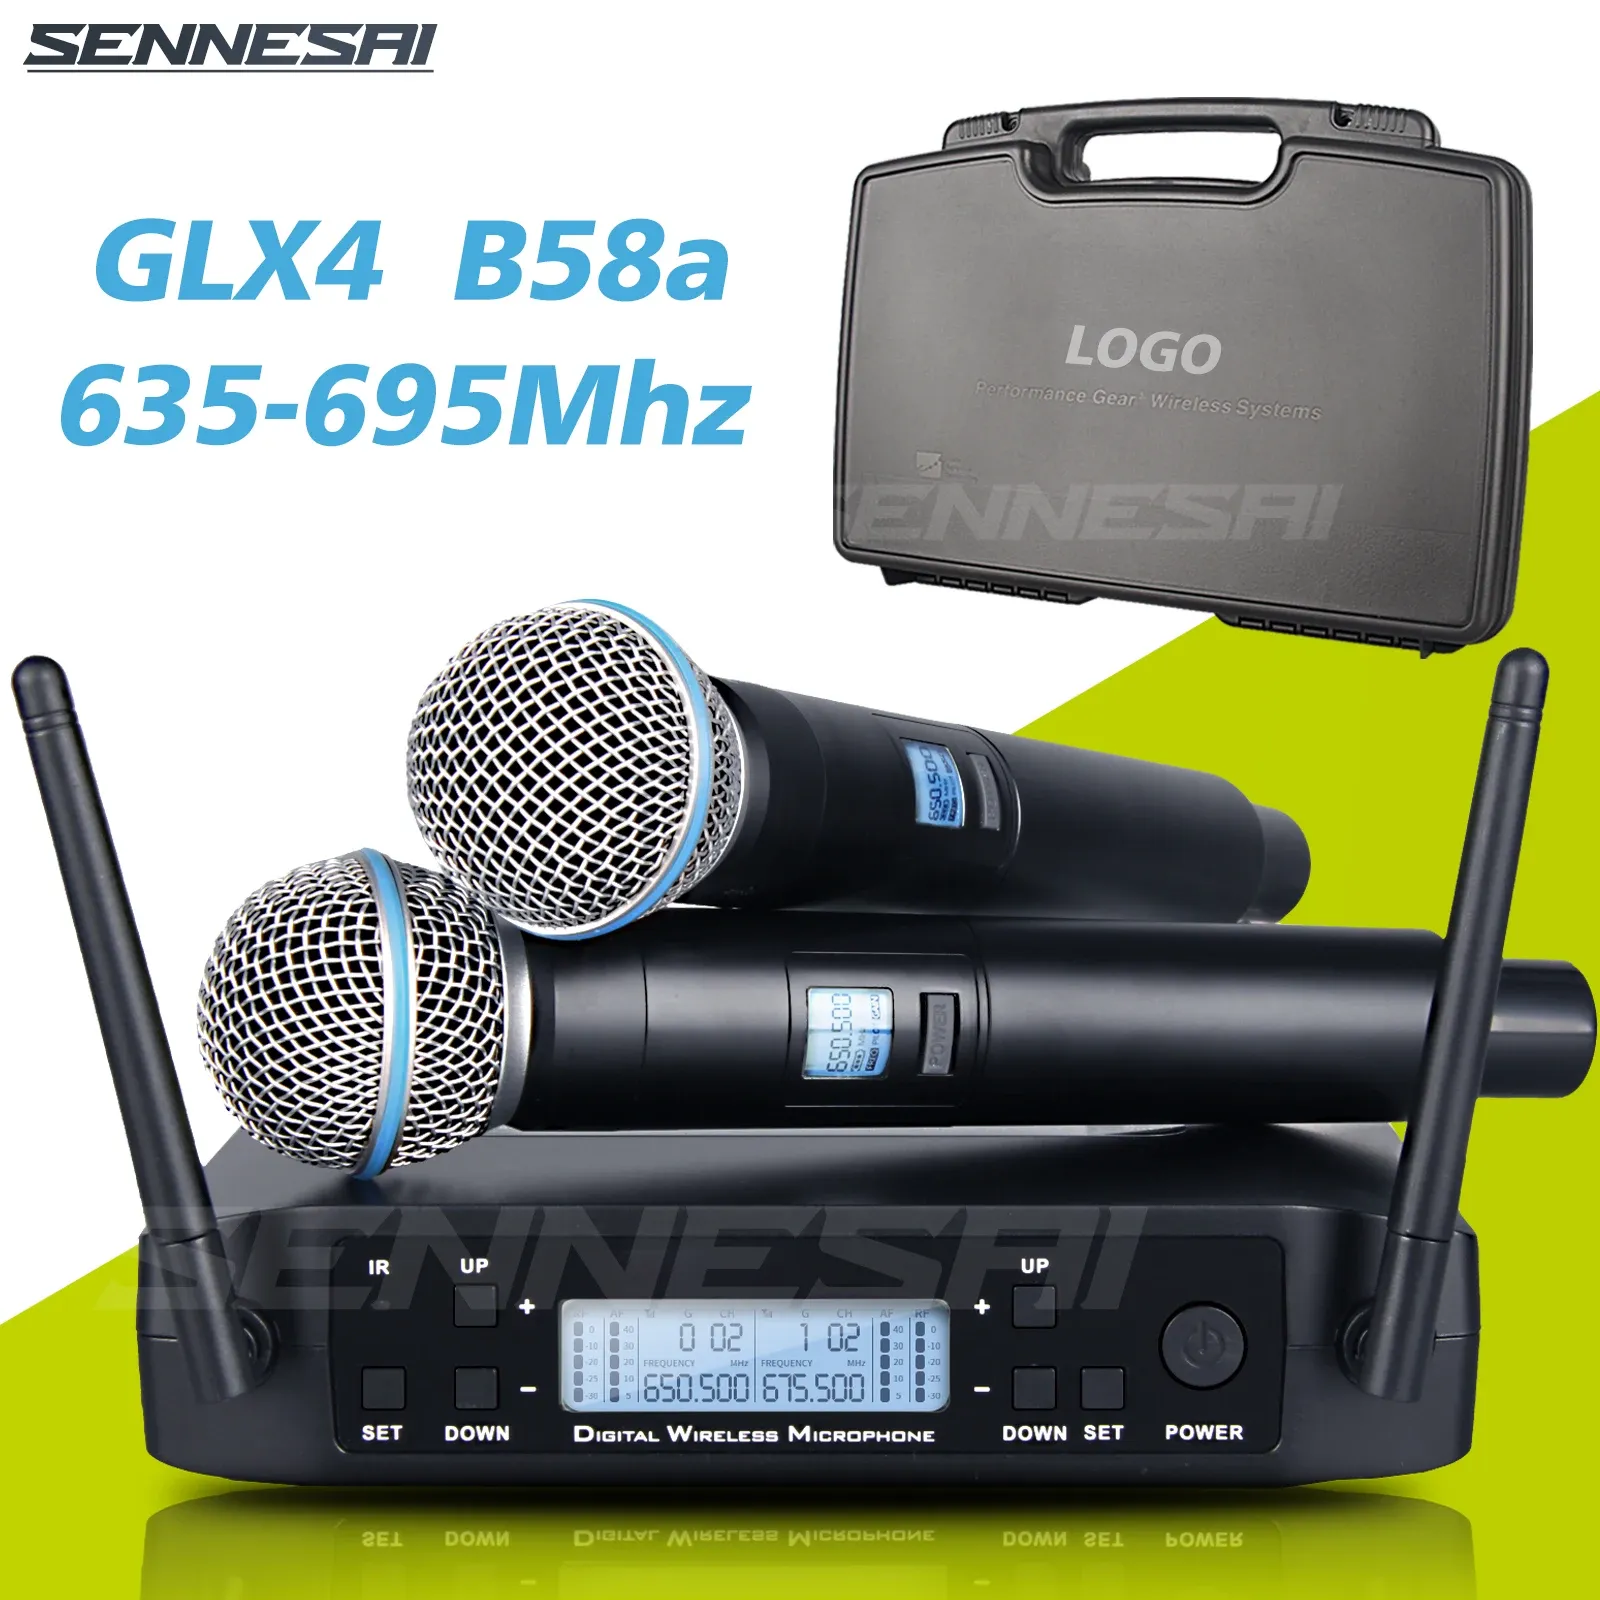 Микрофоны Sennesai GLX4 Профессиональный двойной беспроводной микрофон 600699 МГц.